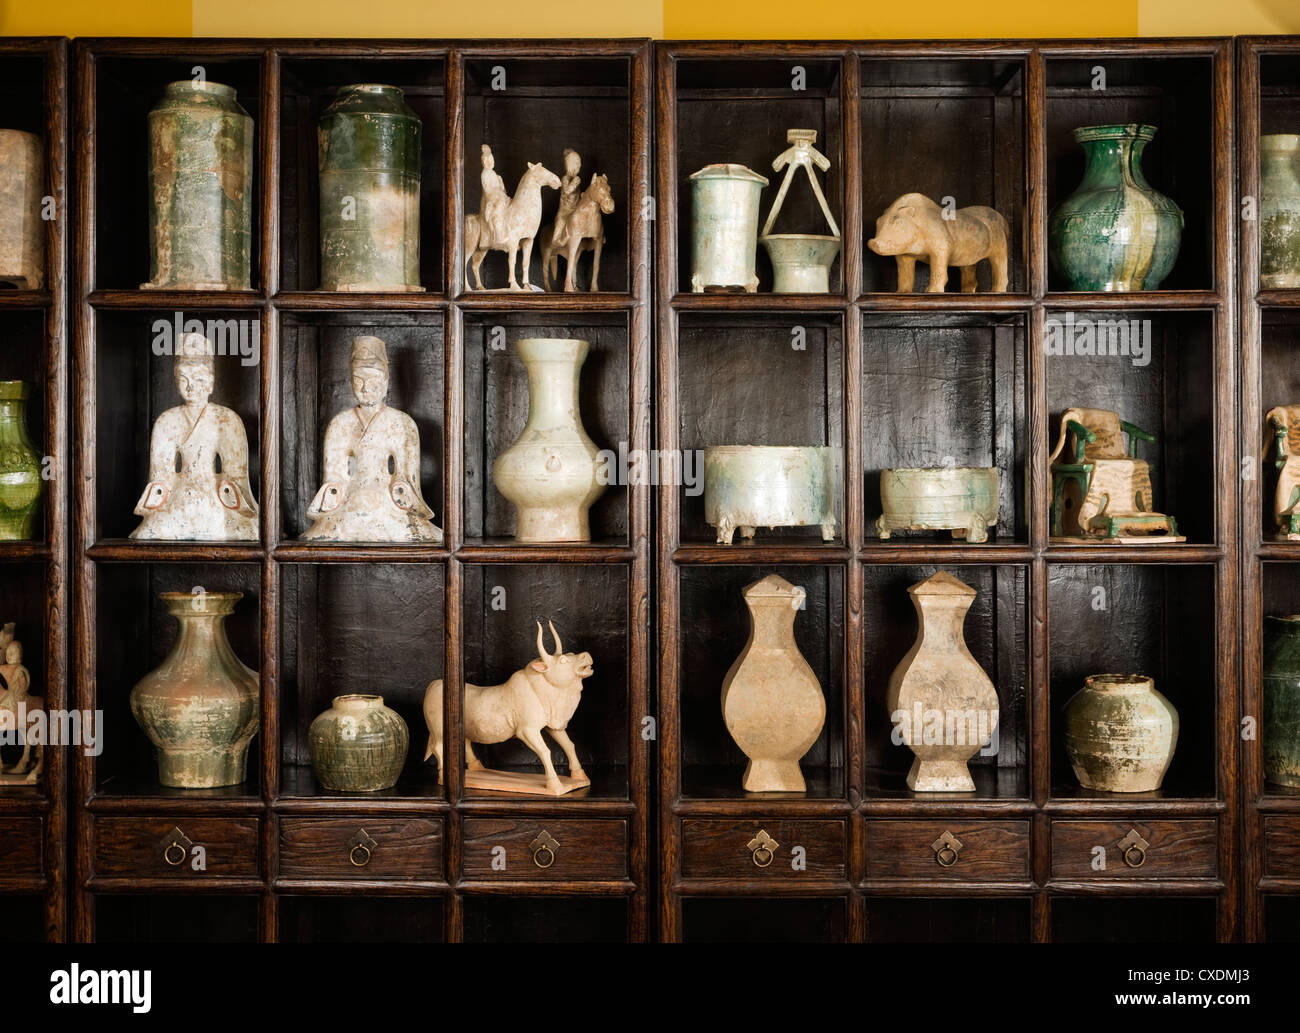 Laccato cinese elm libreria con una raccolta di cinesi Han, Ming e dinastia Qi oggetti Foto Stock